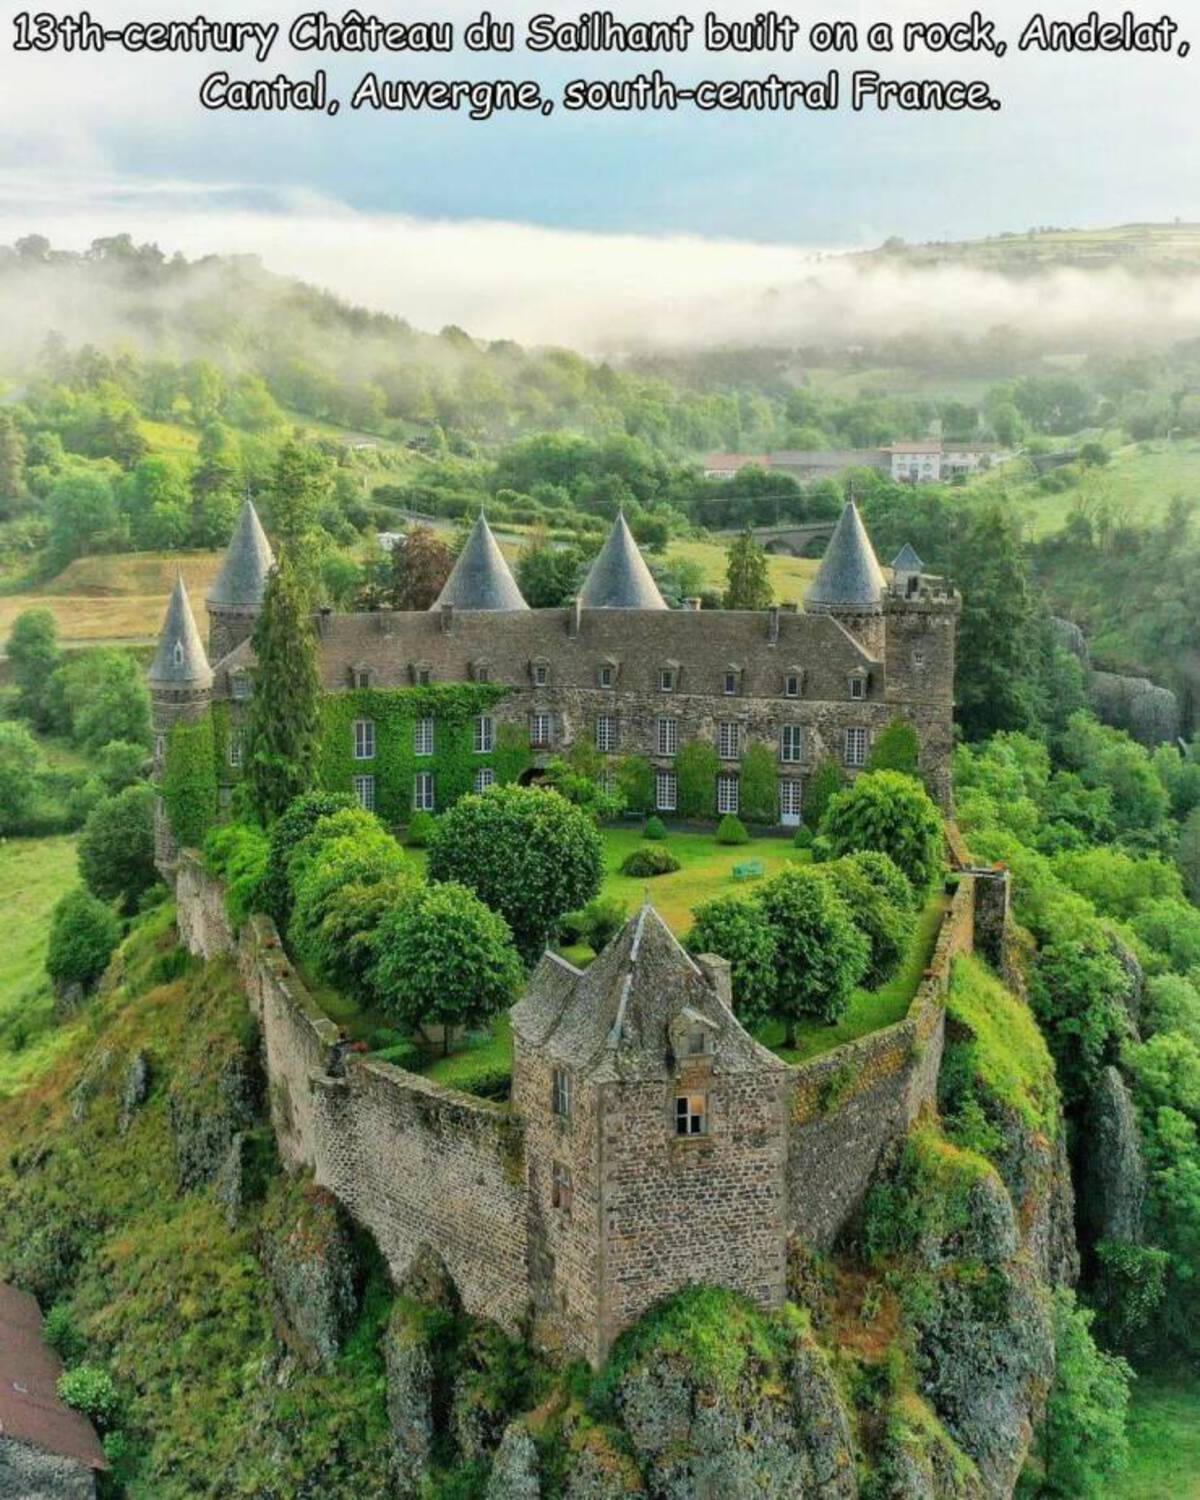 château du sailhant - 13thcentury Chteau du Sailhant built on a rock, Andelat, Cantal, Auvergne, southcentral France.